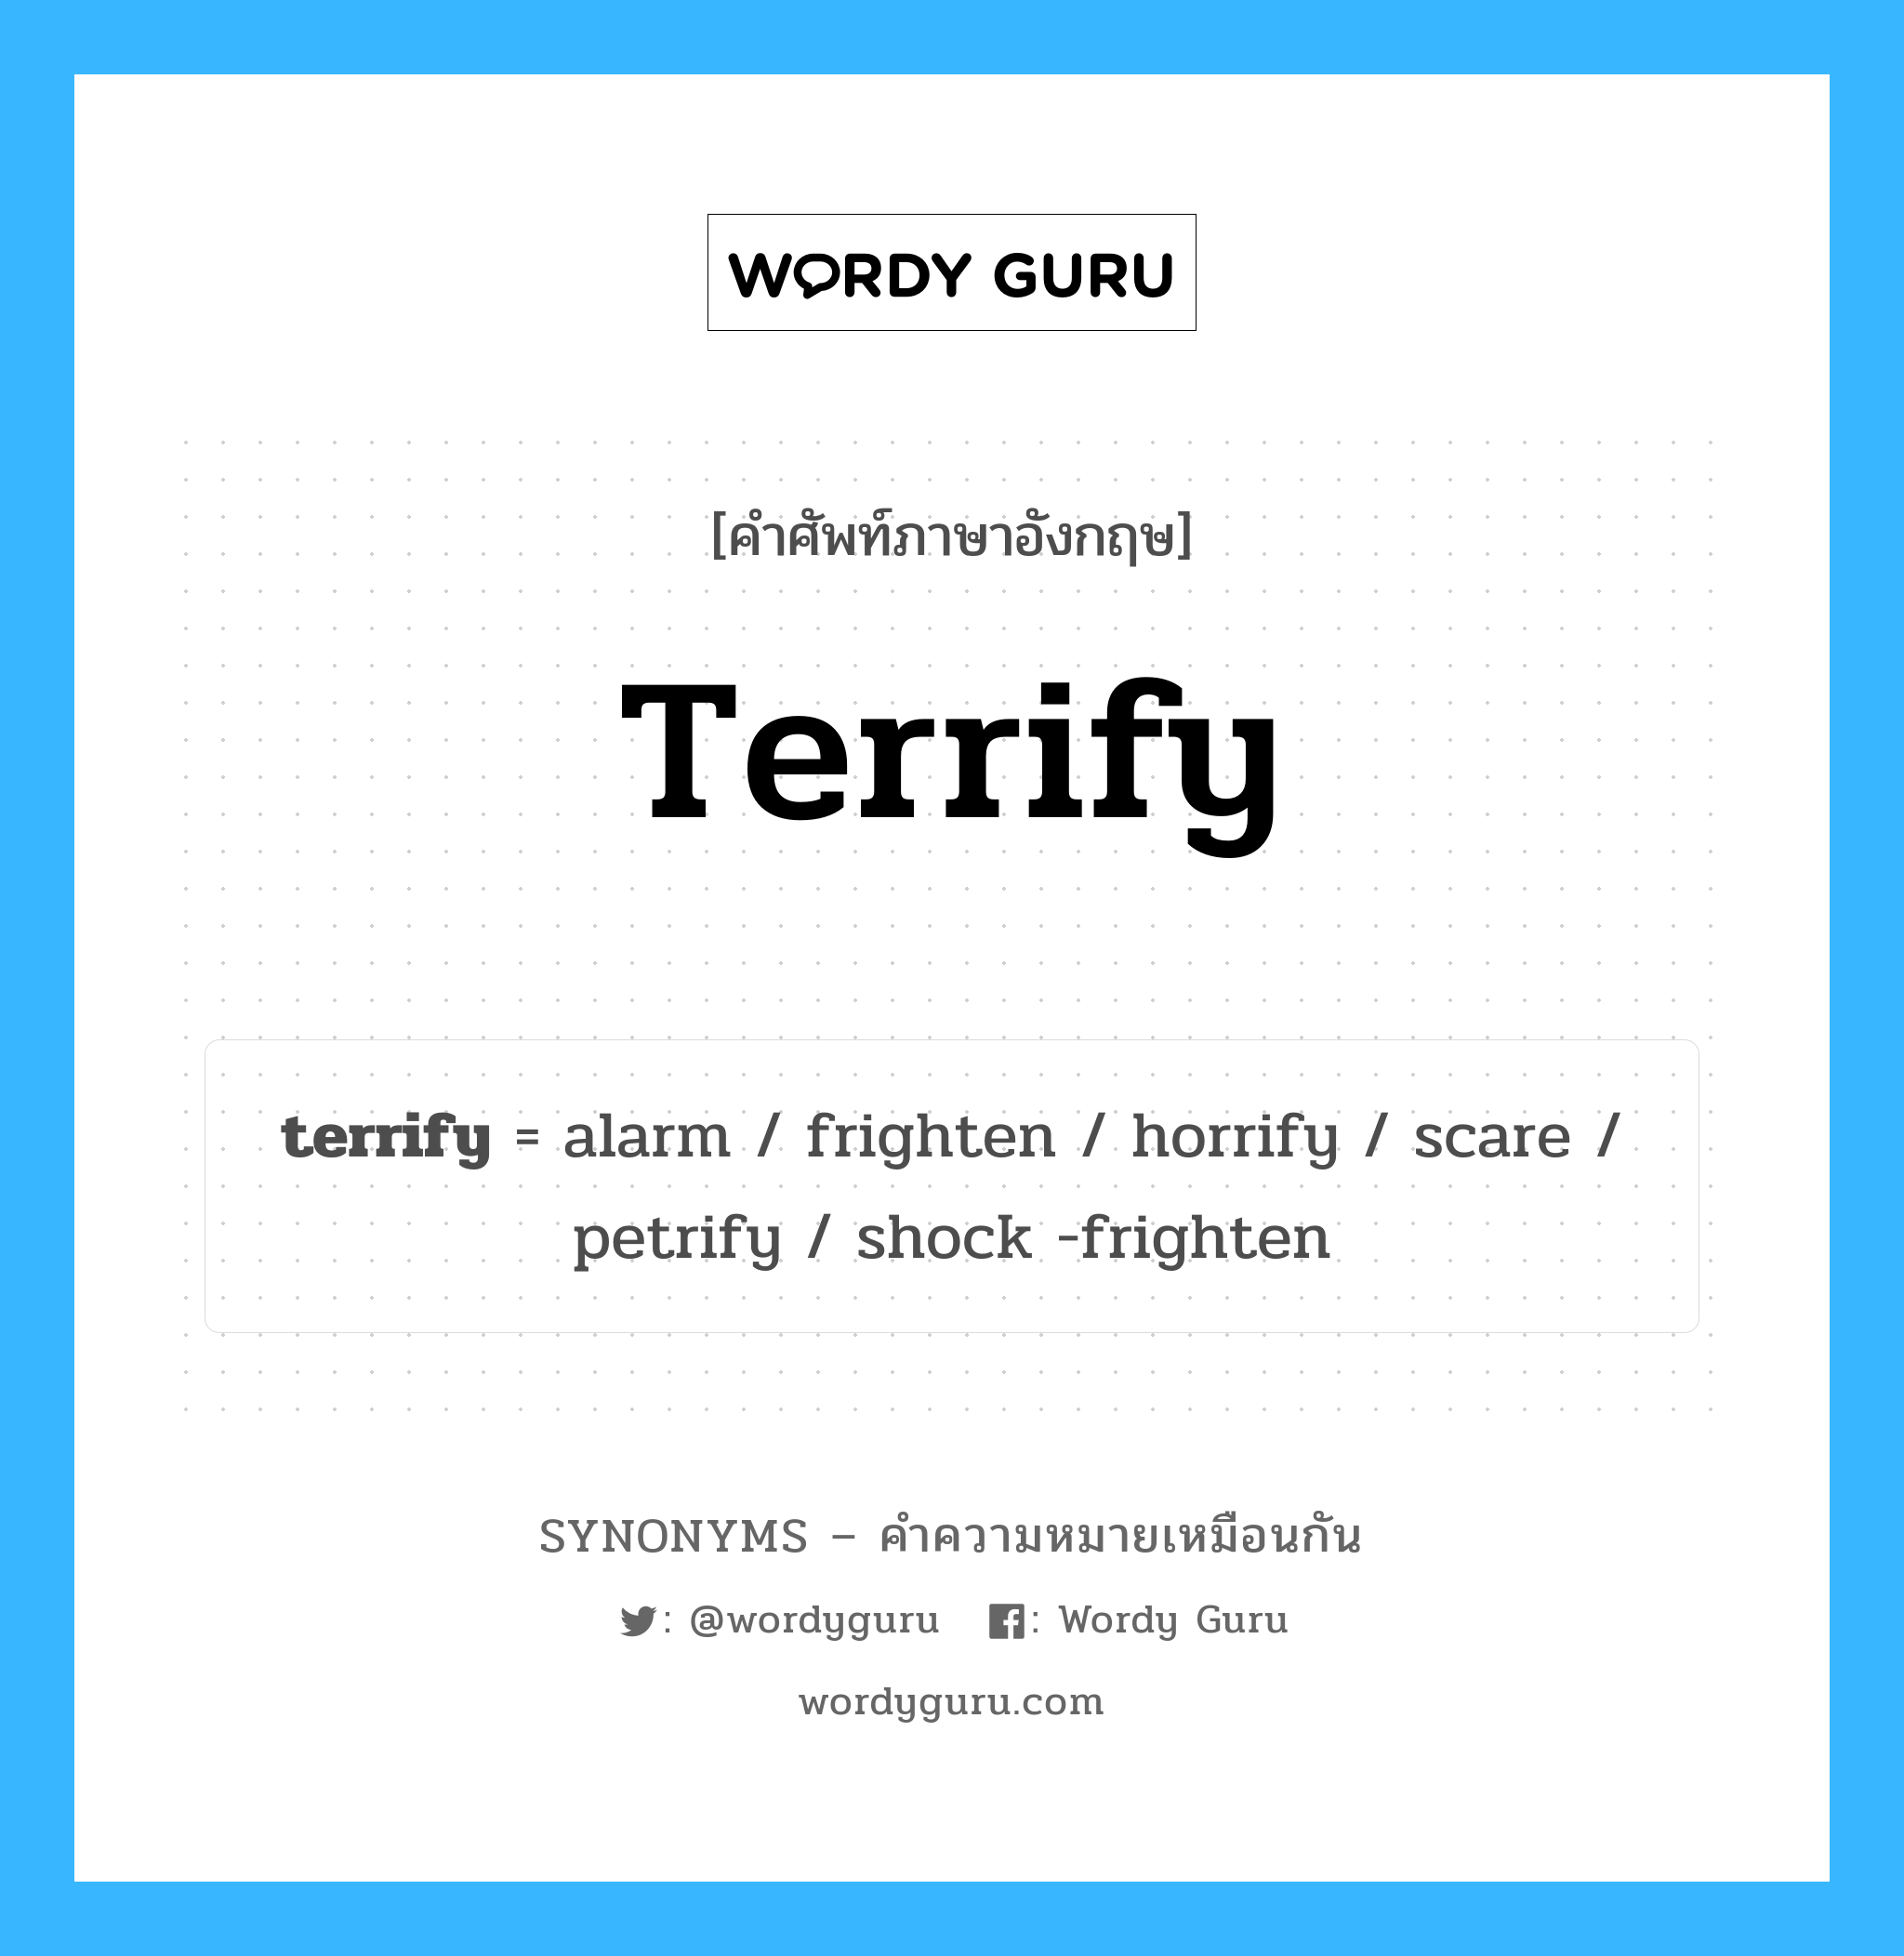 terrify เป็นหนึ่งใน alarm และมีคำอื่น ๆ อีกดังนี้, คำศัพท์ภาษาอังกฤษ terrify ความหมายคล้ายกันกับ alarm แปลว่า เตือนภัย หมวด alarm